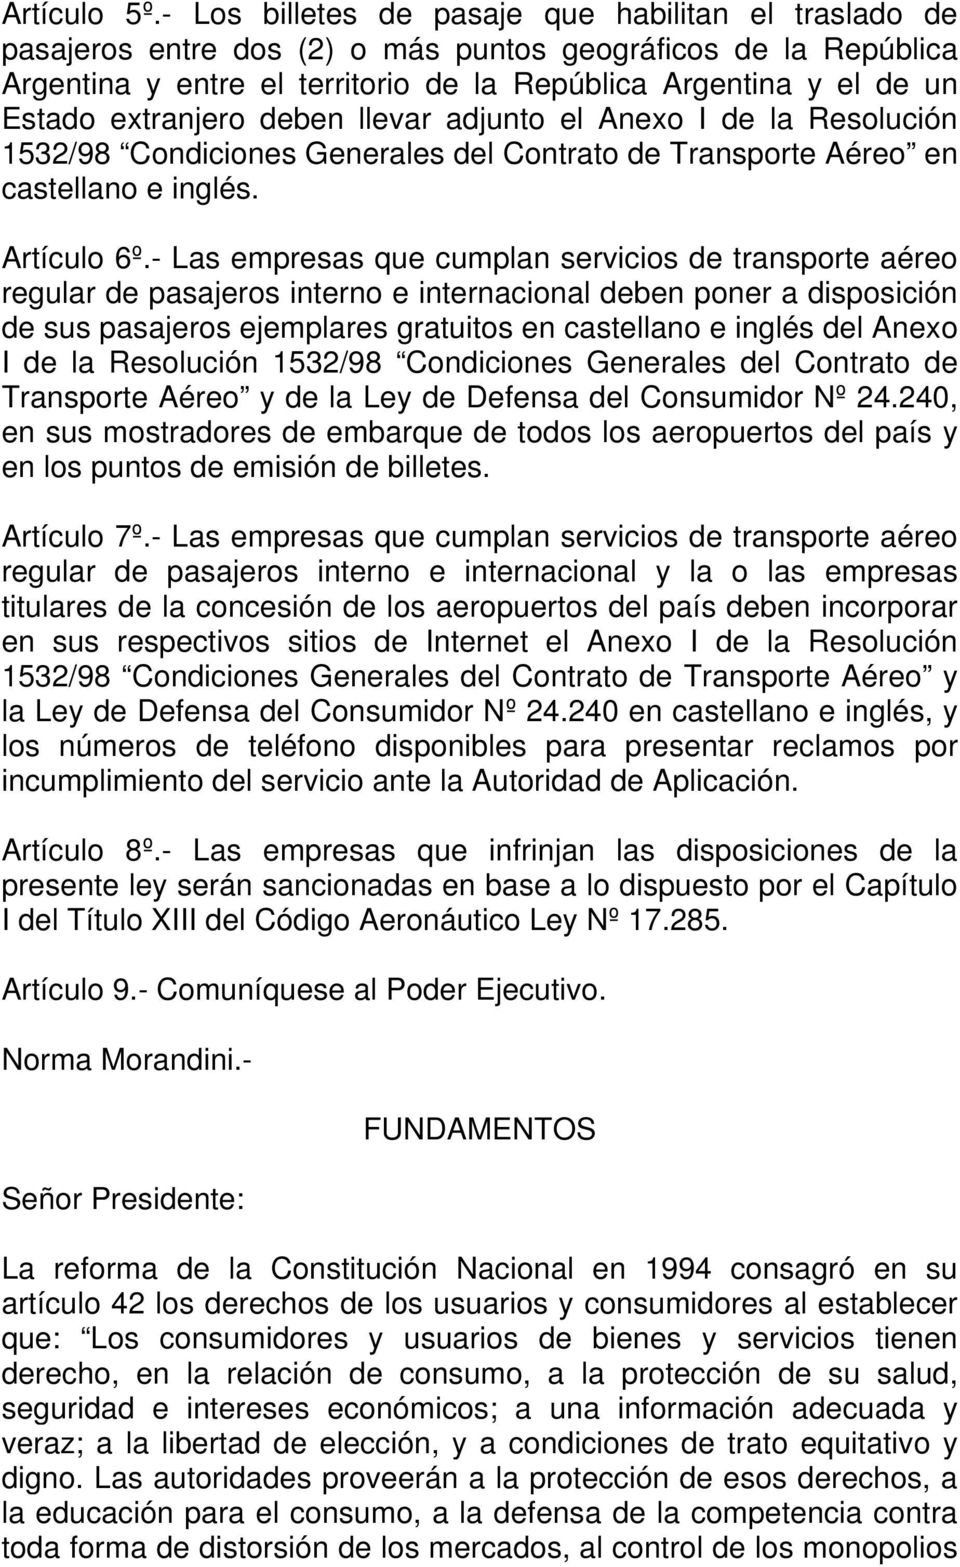 extranjero deben llevar adjunto el Anexo I de la Resolución 1532/98 Condiciones Generales del Contrato de Transporte Aéreo en castellano e inglés. Artículo 6º.